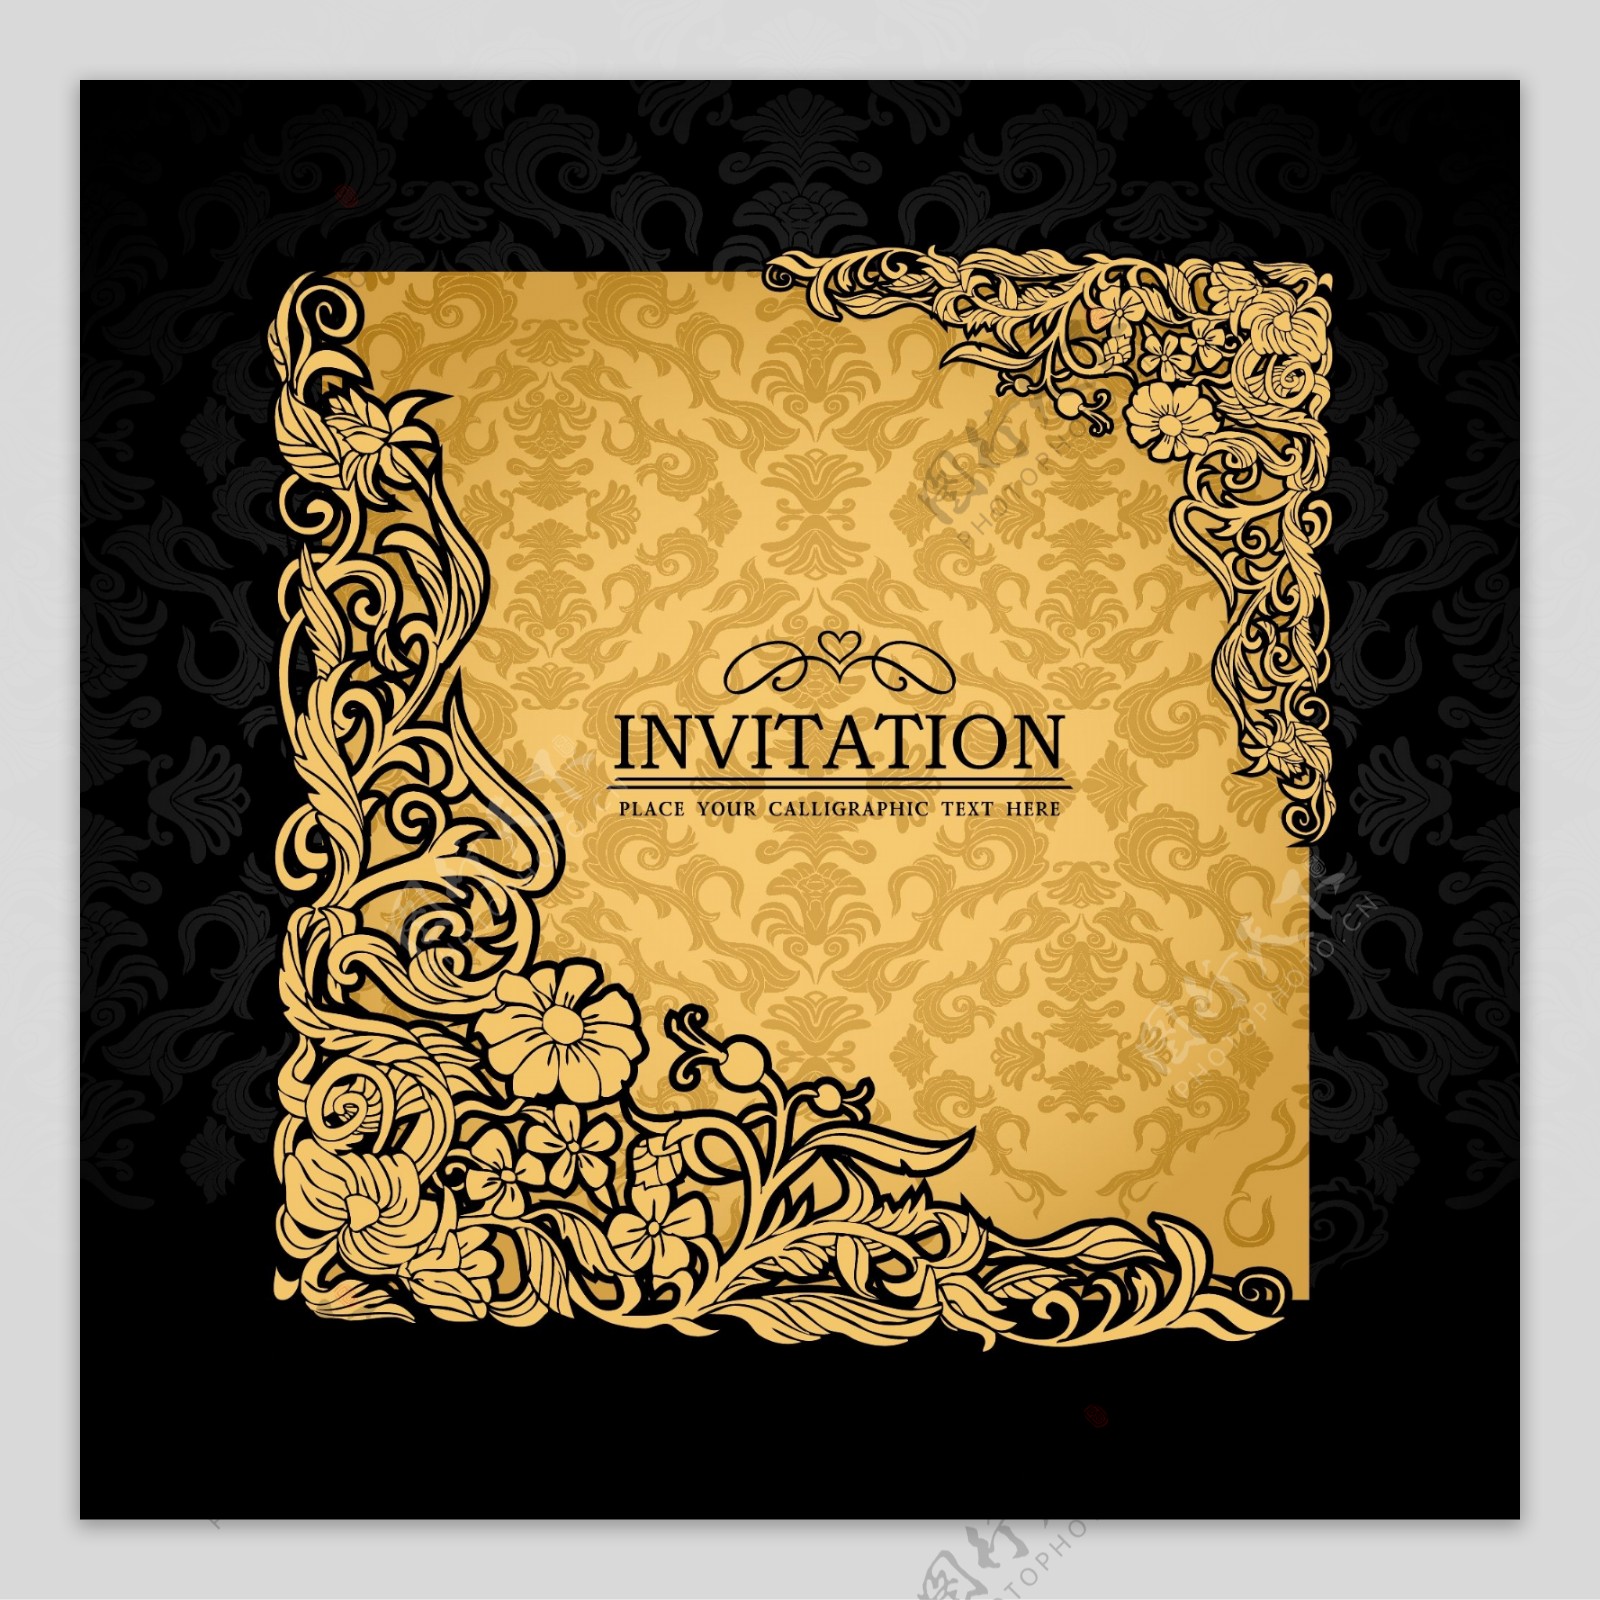 向量的邀请卡上有金色的花朵图案的材料